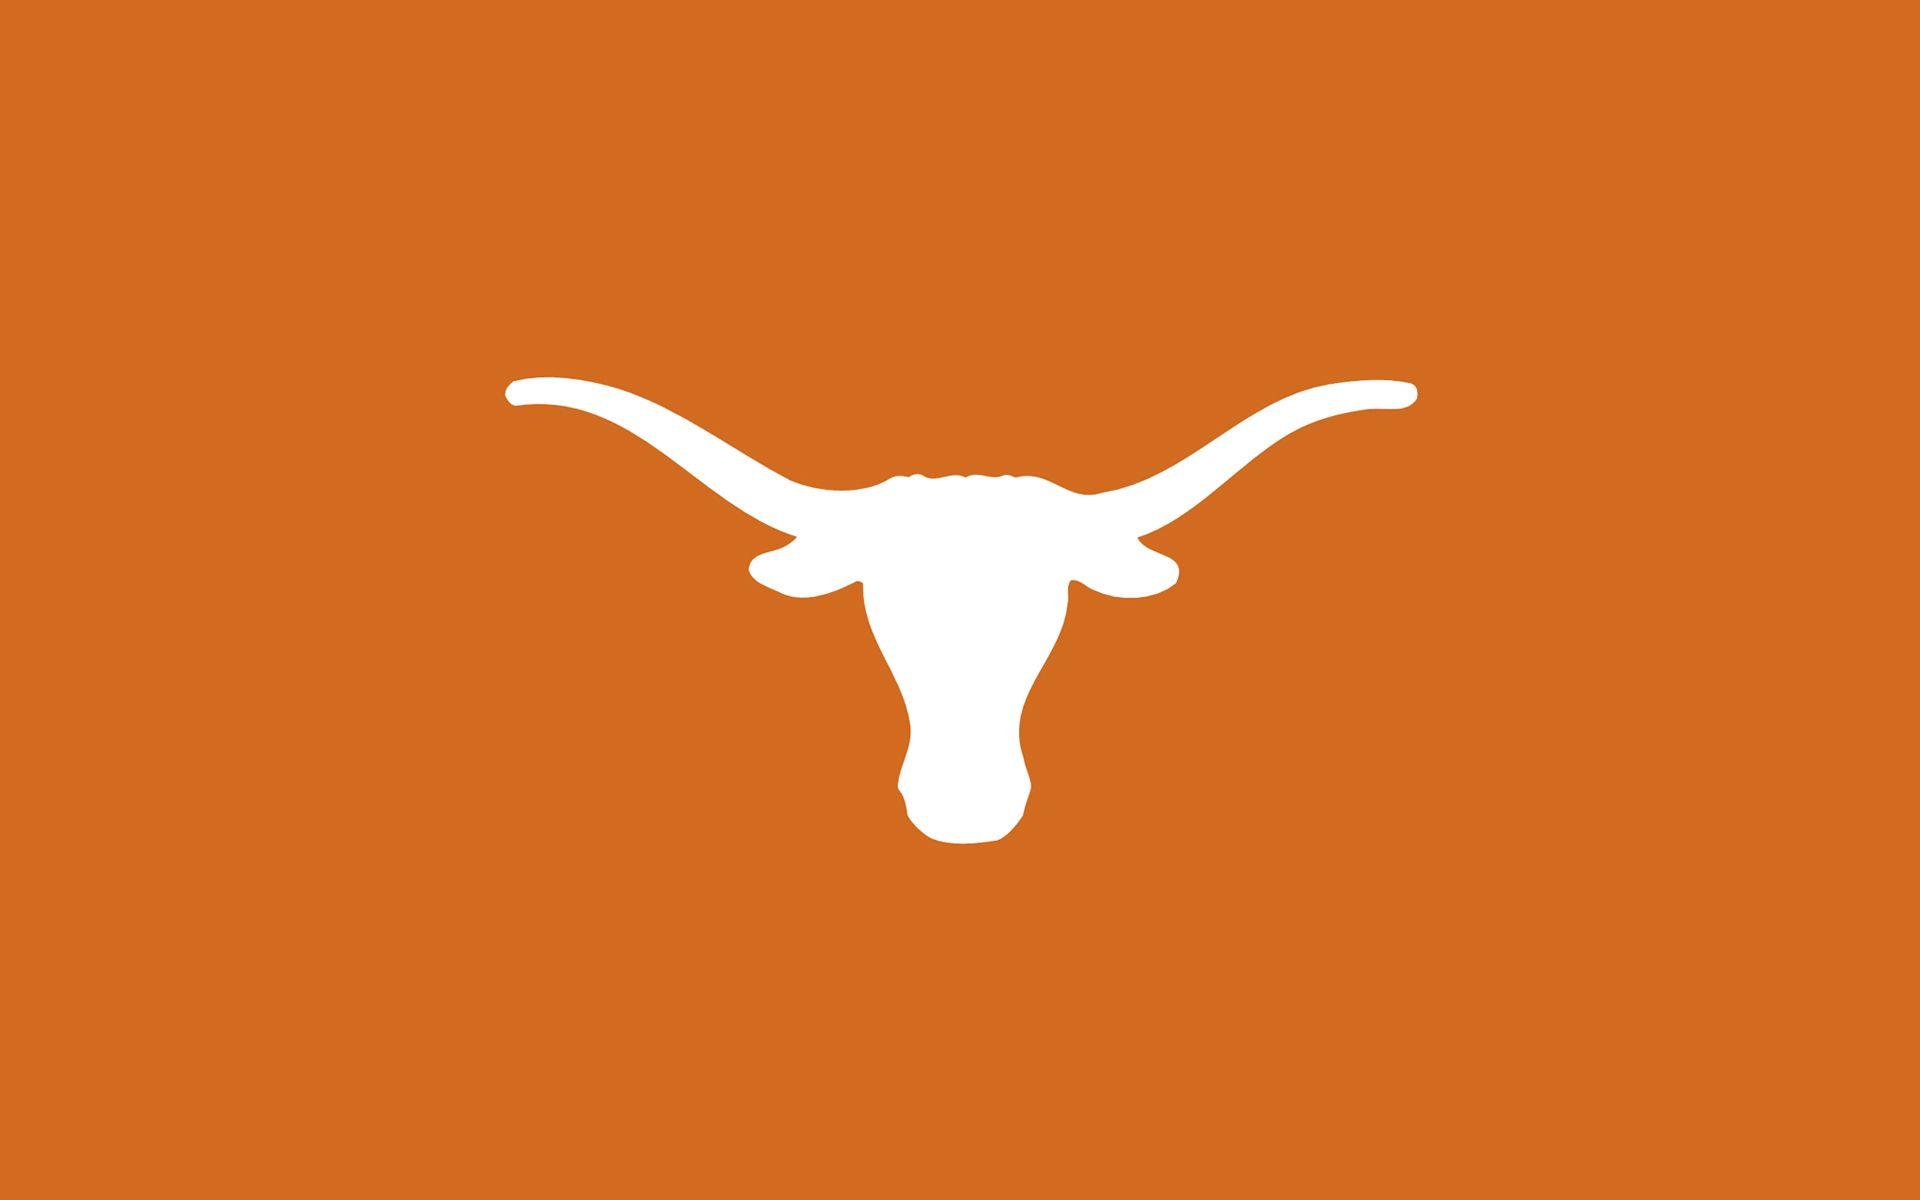 Longhorn Logo - The UT Austin 